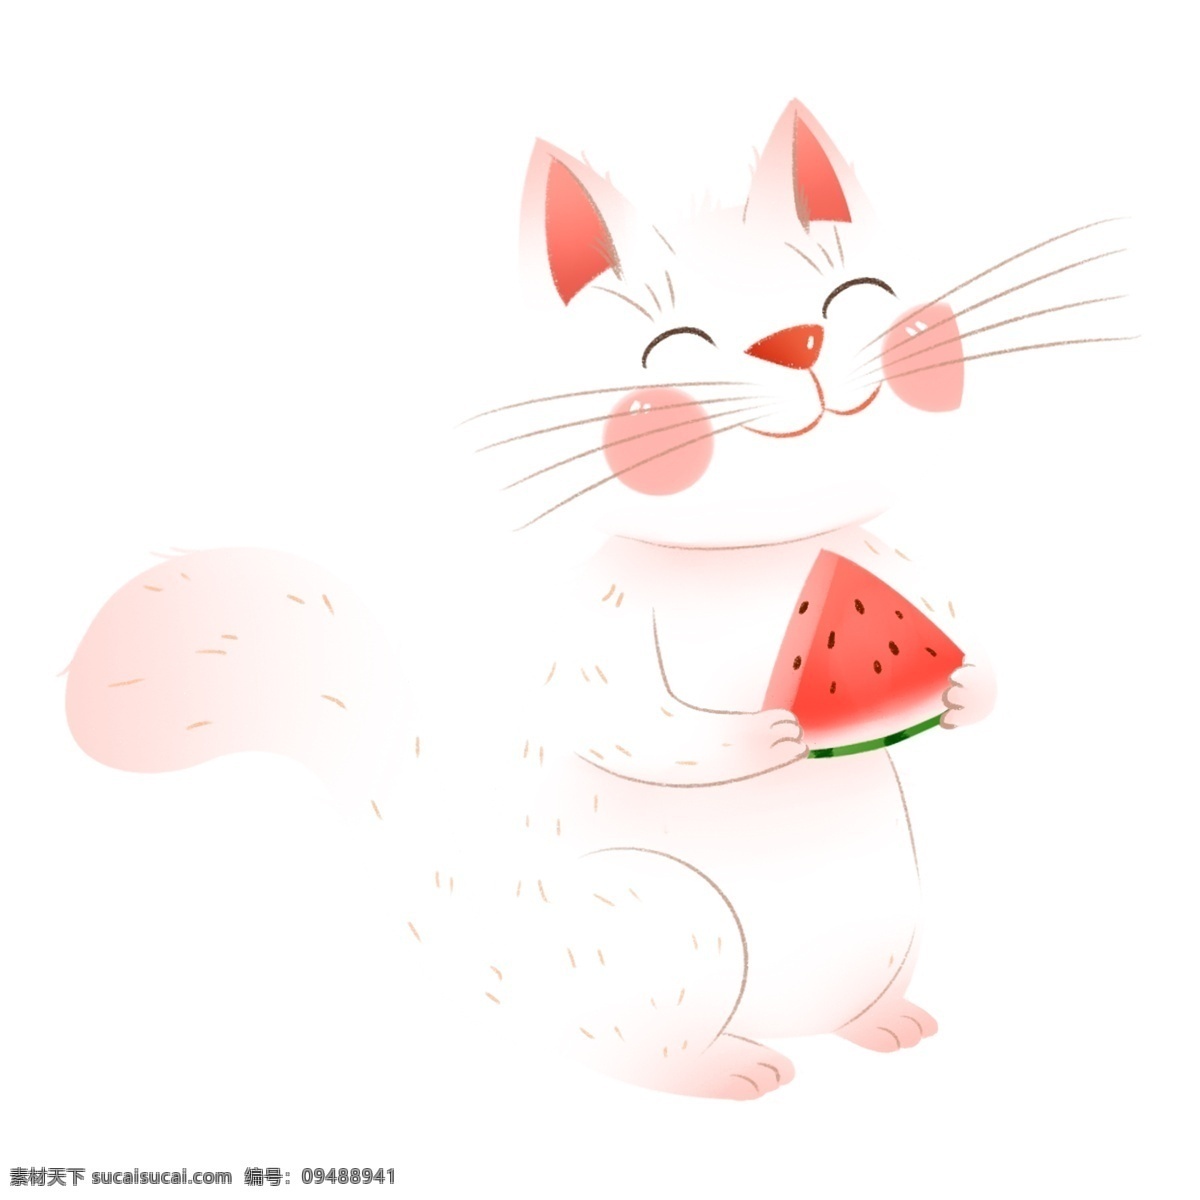 宠物 可爱 小猫 元素 白色小猫 插画 卡通 透明素材 猫咪 动物 装饰图案